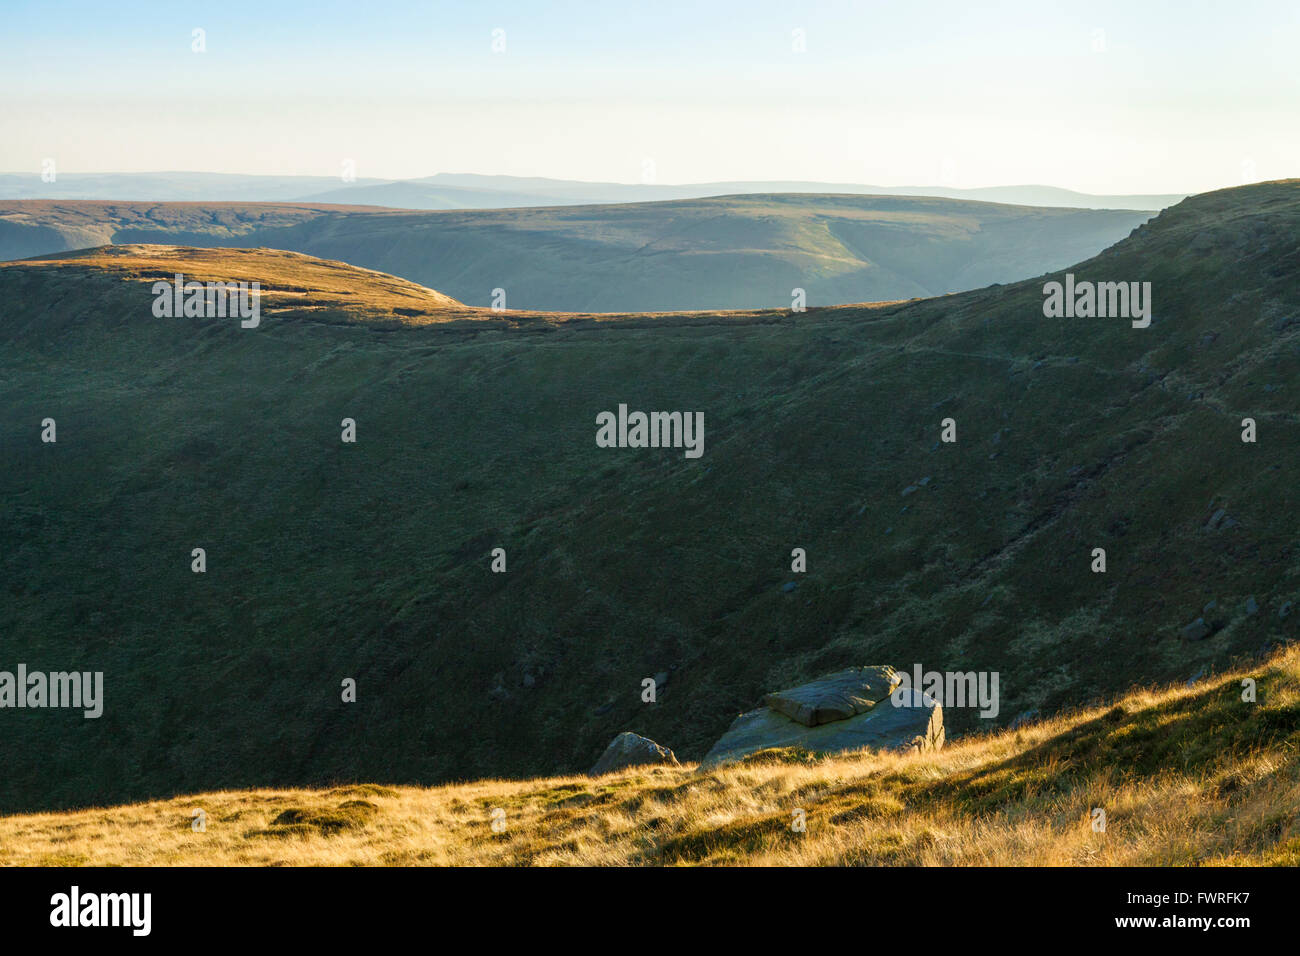 UK paysages : la lumière du soleil d'automne de prendre le dessus des collines et la lande autour de Crowden Clough sur Kinder Scout, Derbyshire Peak District, England, UK Banque D'Images